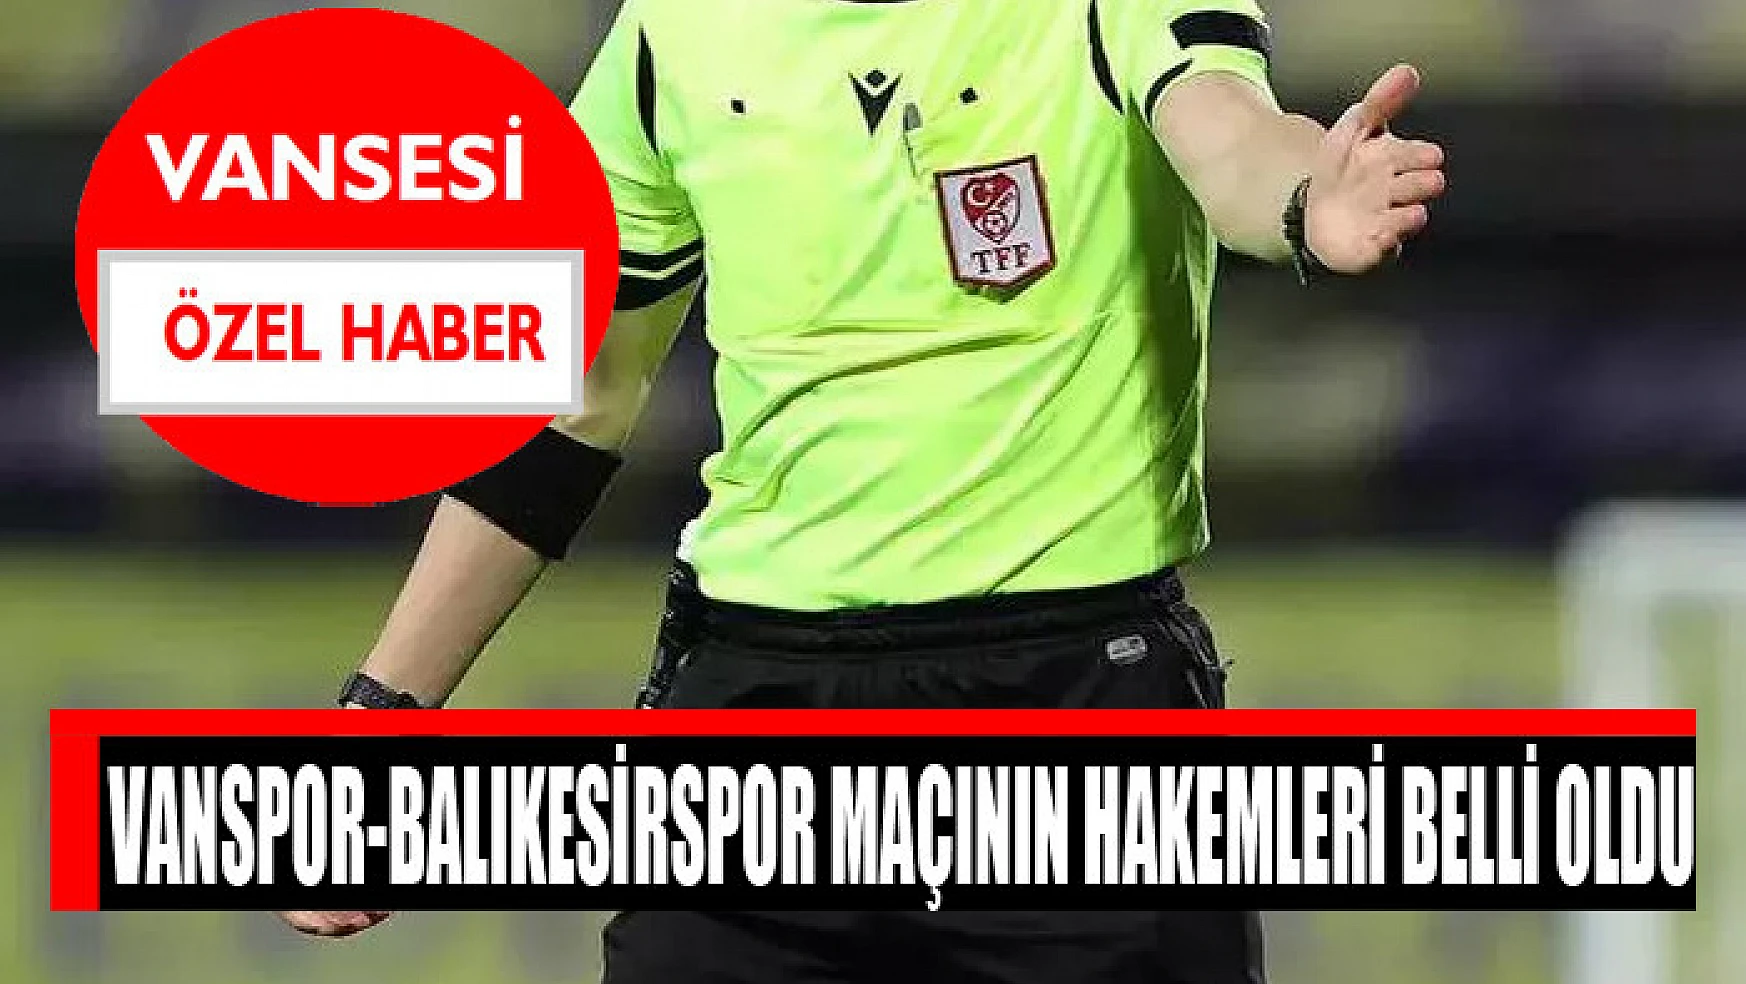 Vanspor-Balıkesirspor maçının hakemleri belli oldu